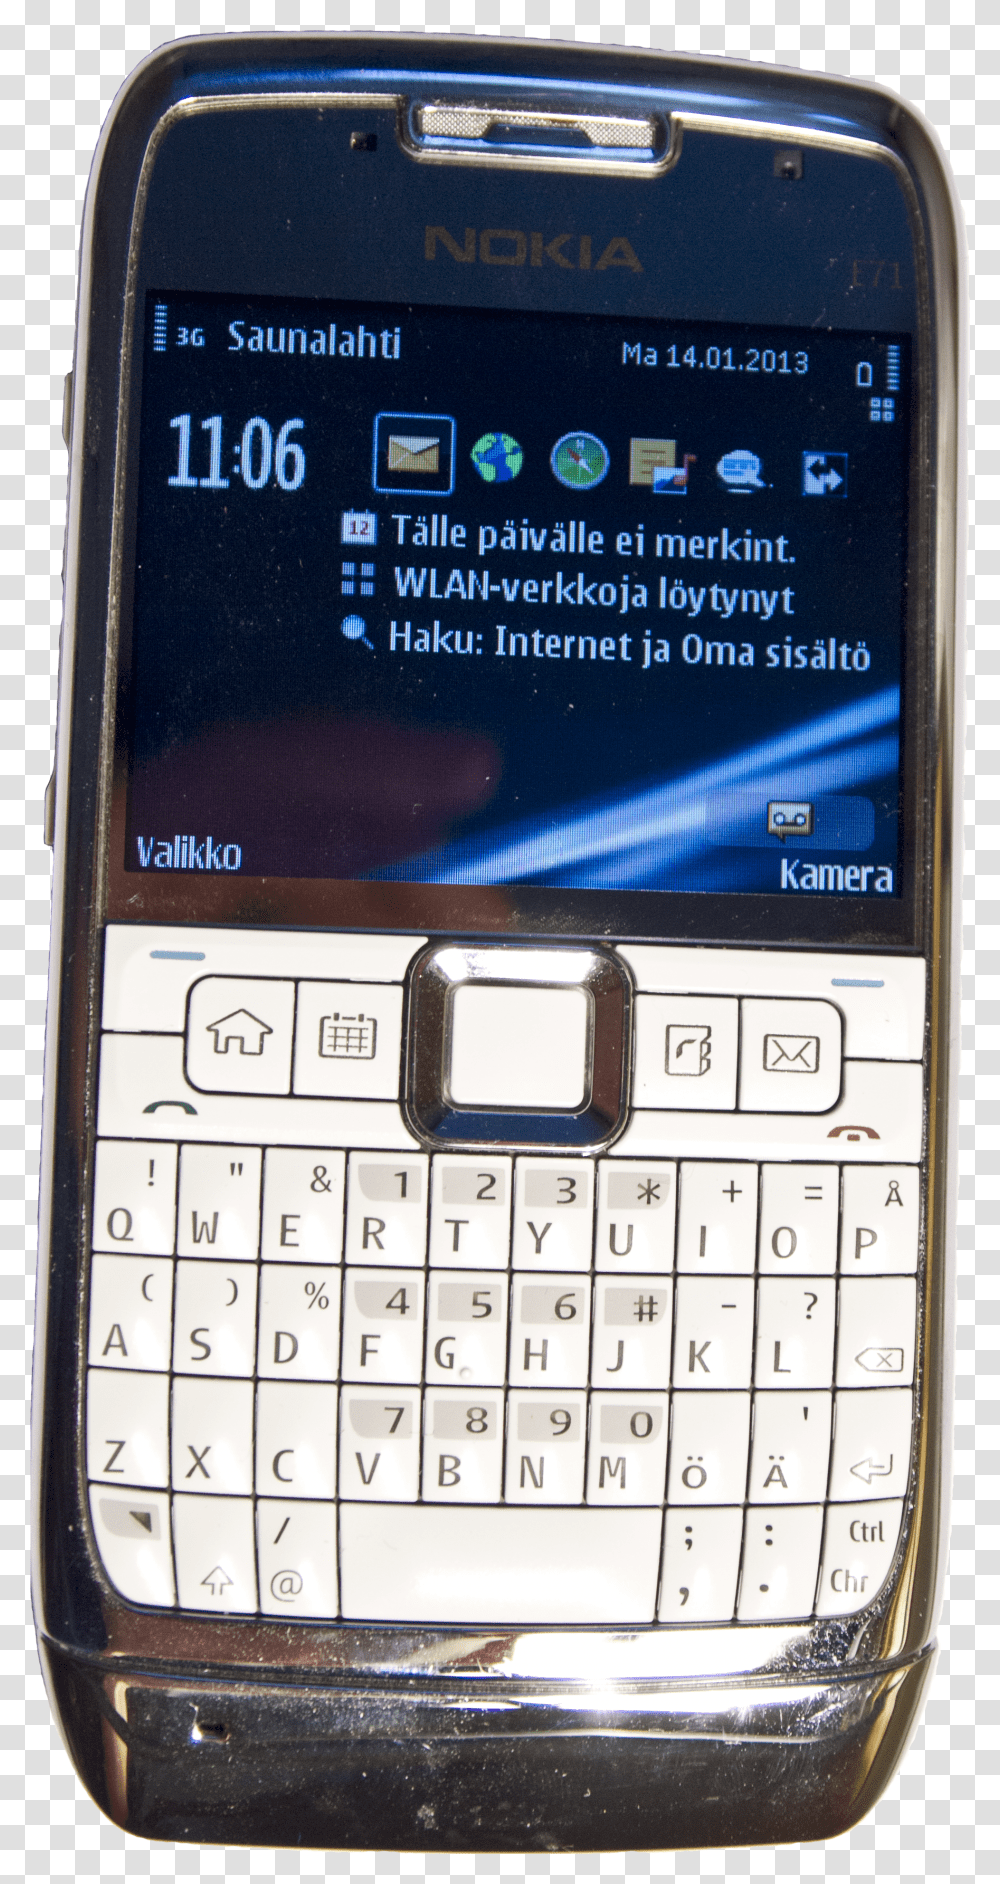 Nokia E71 Phone Nokia E71 Dual Sim 2013 Transparent Png